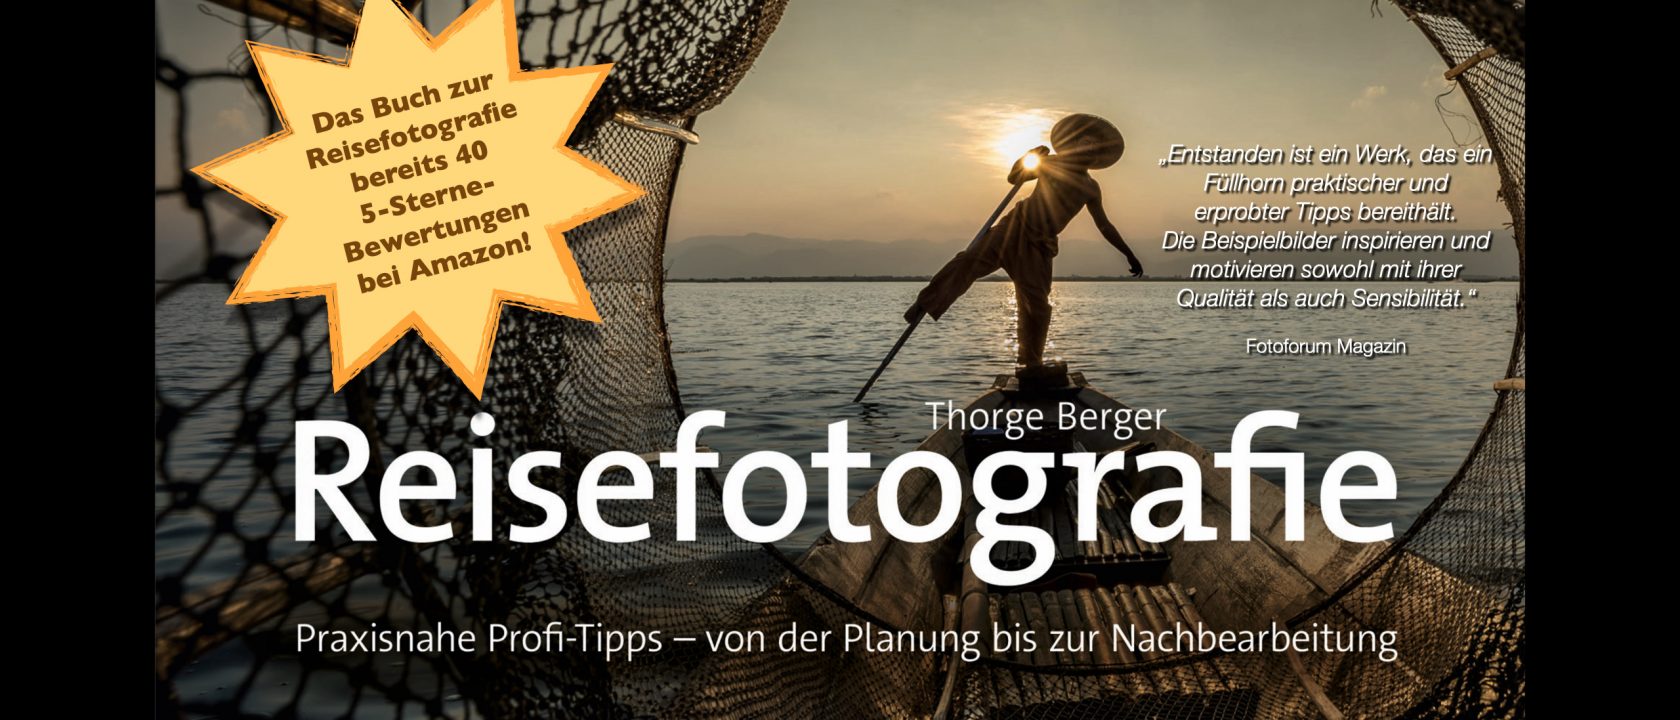 Reisefotografie-Buch - 40 Fünf-Sterne-Bewertungen